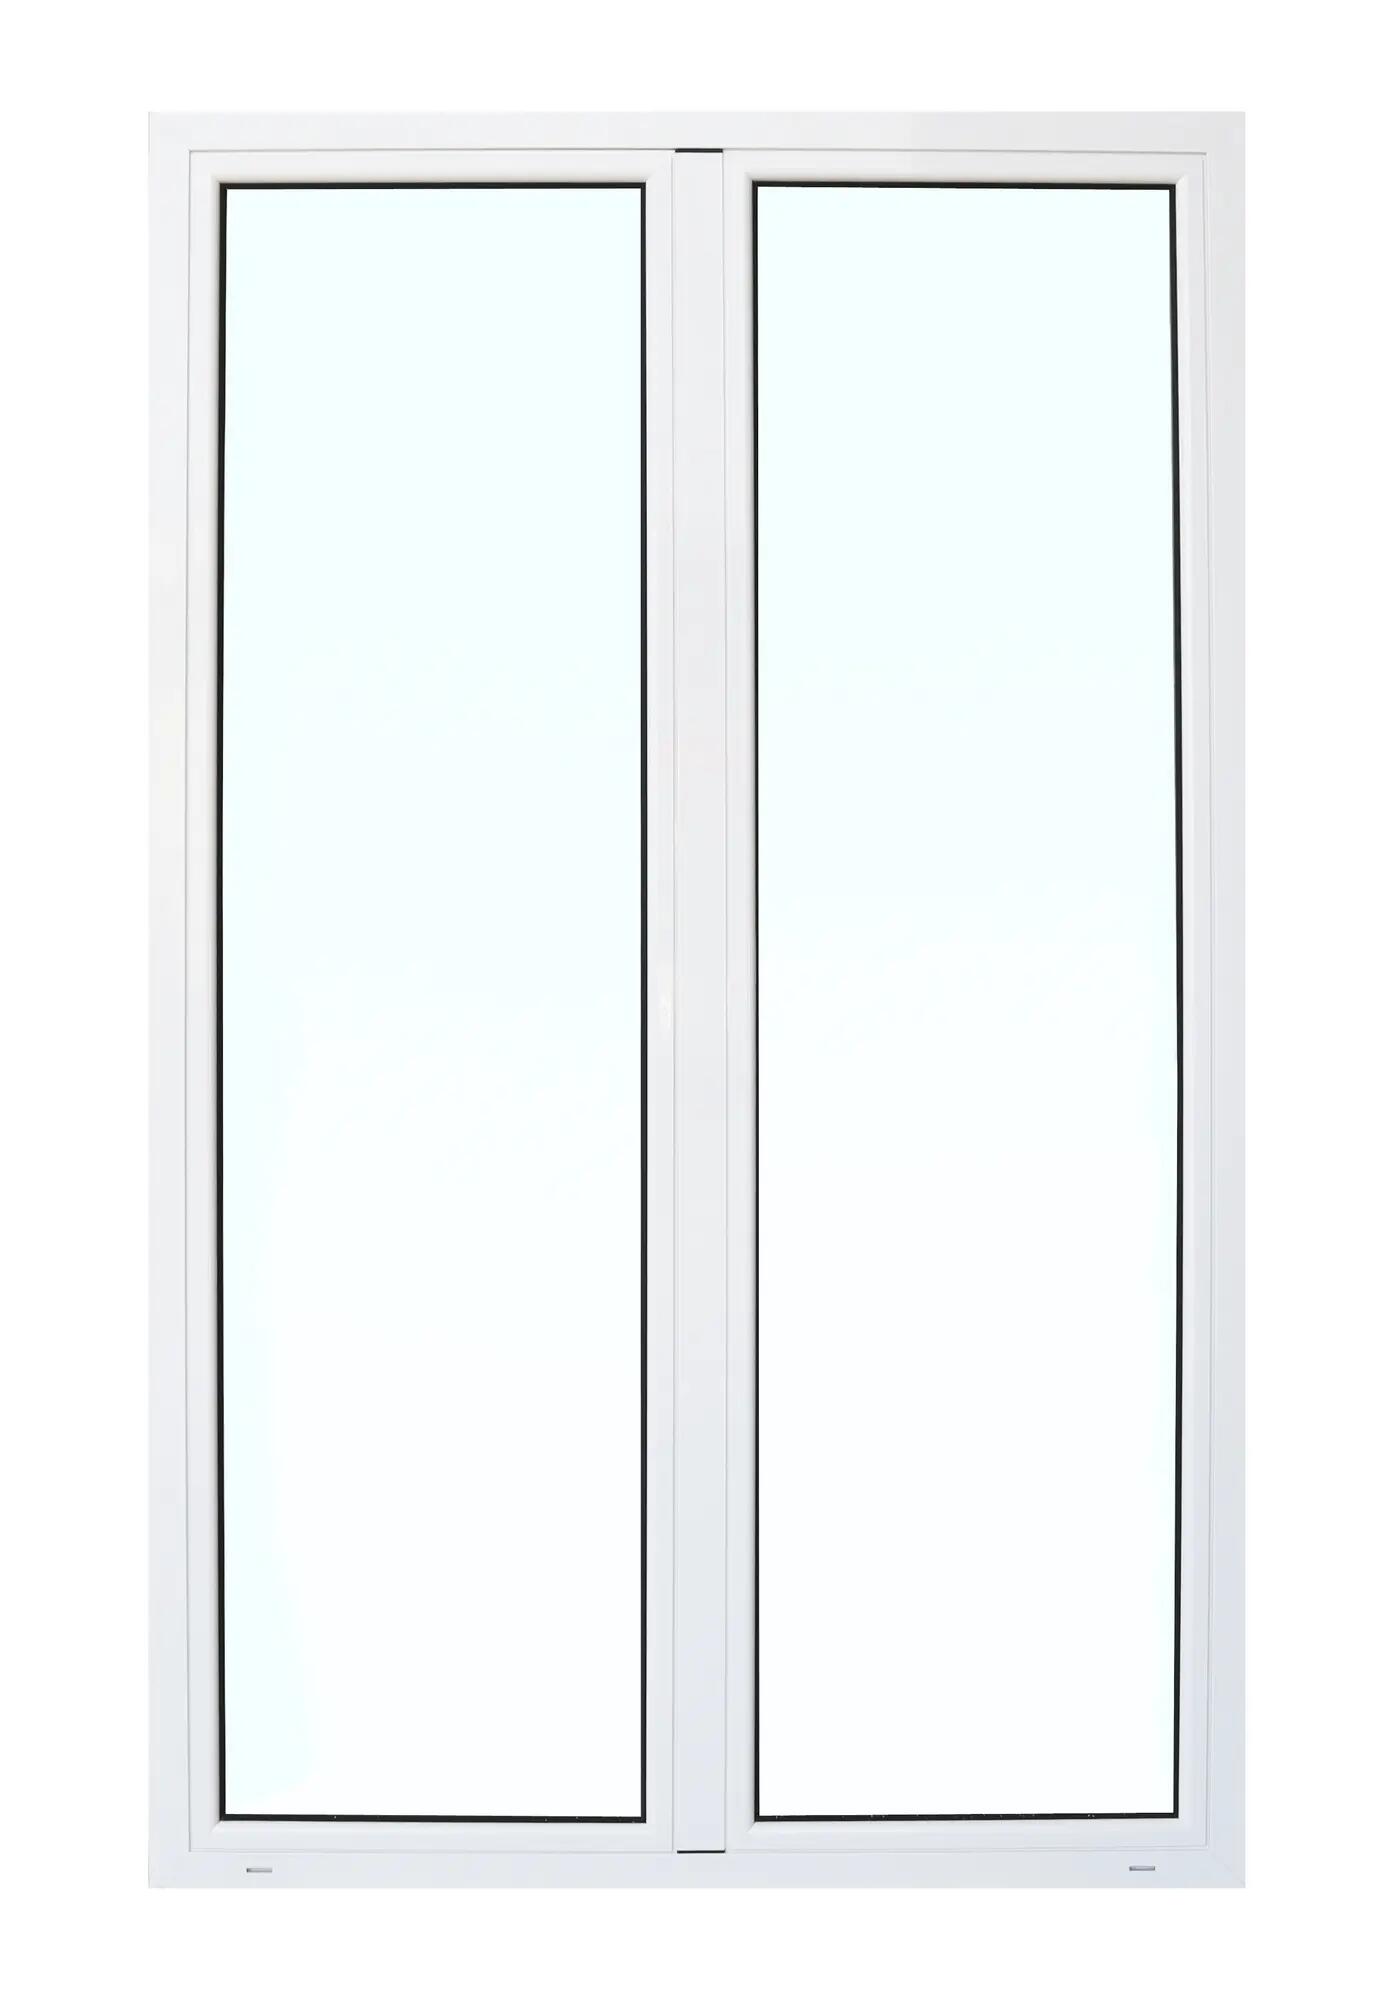 Balconera aluminio artens blanca practicable 130x210cm